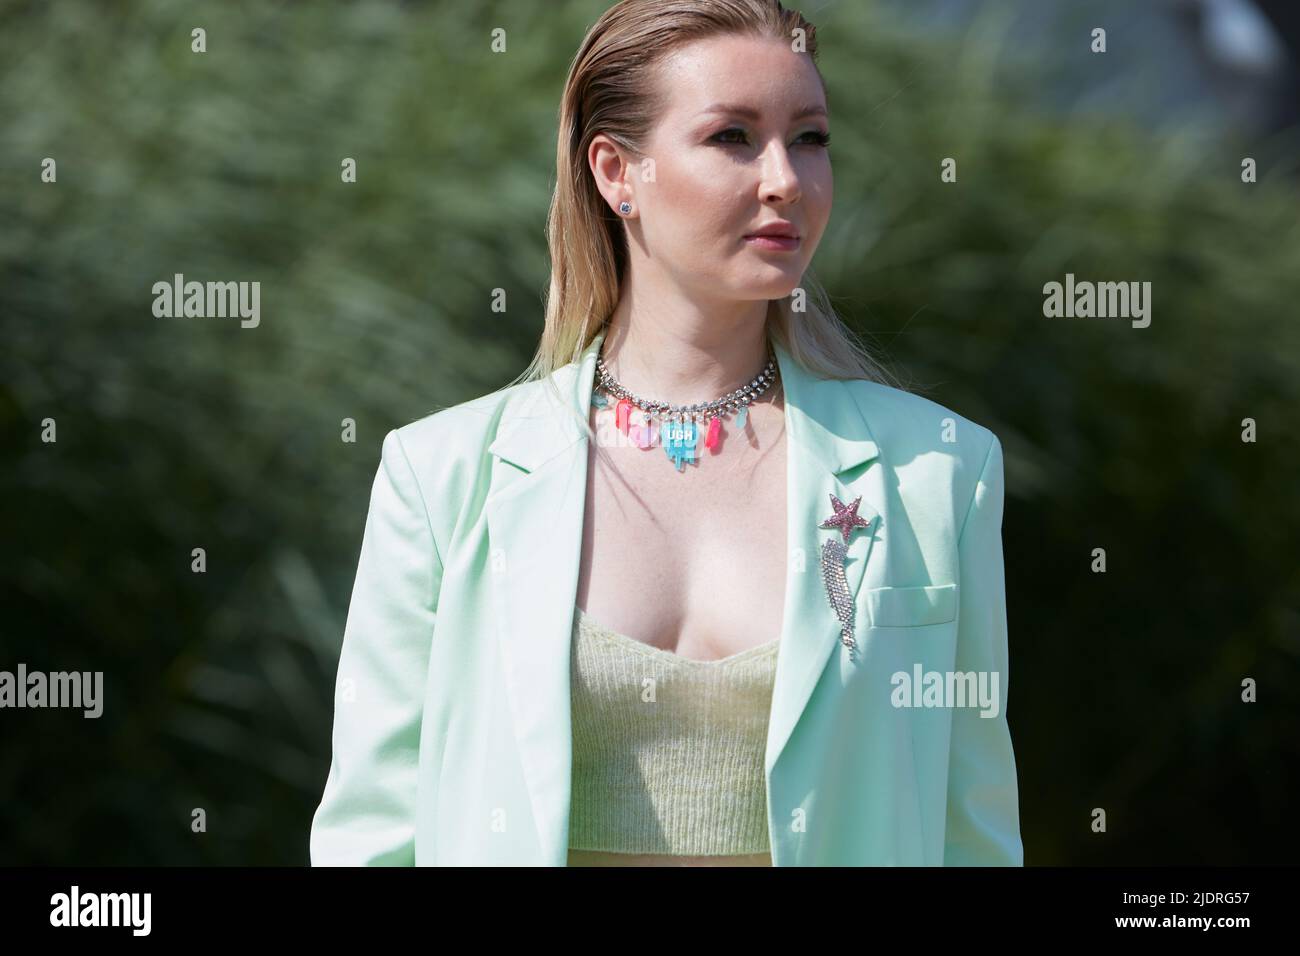 MILAN, ITALIE - 18 JUIN 2022 : femme avec veste turquoise et collier avec objets bleus et roses avant le spectacle de mode MSGM, rue de la semaine de la mode de Milan Banque D'Images